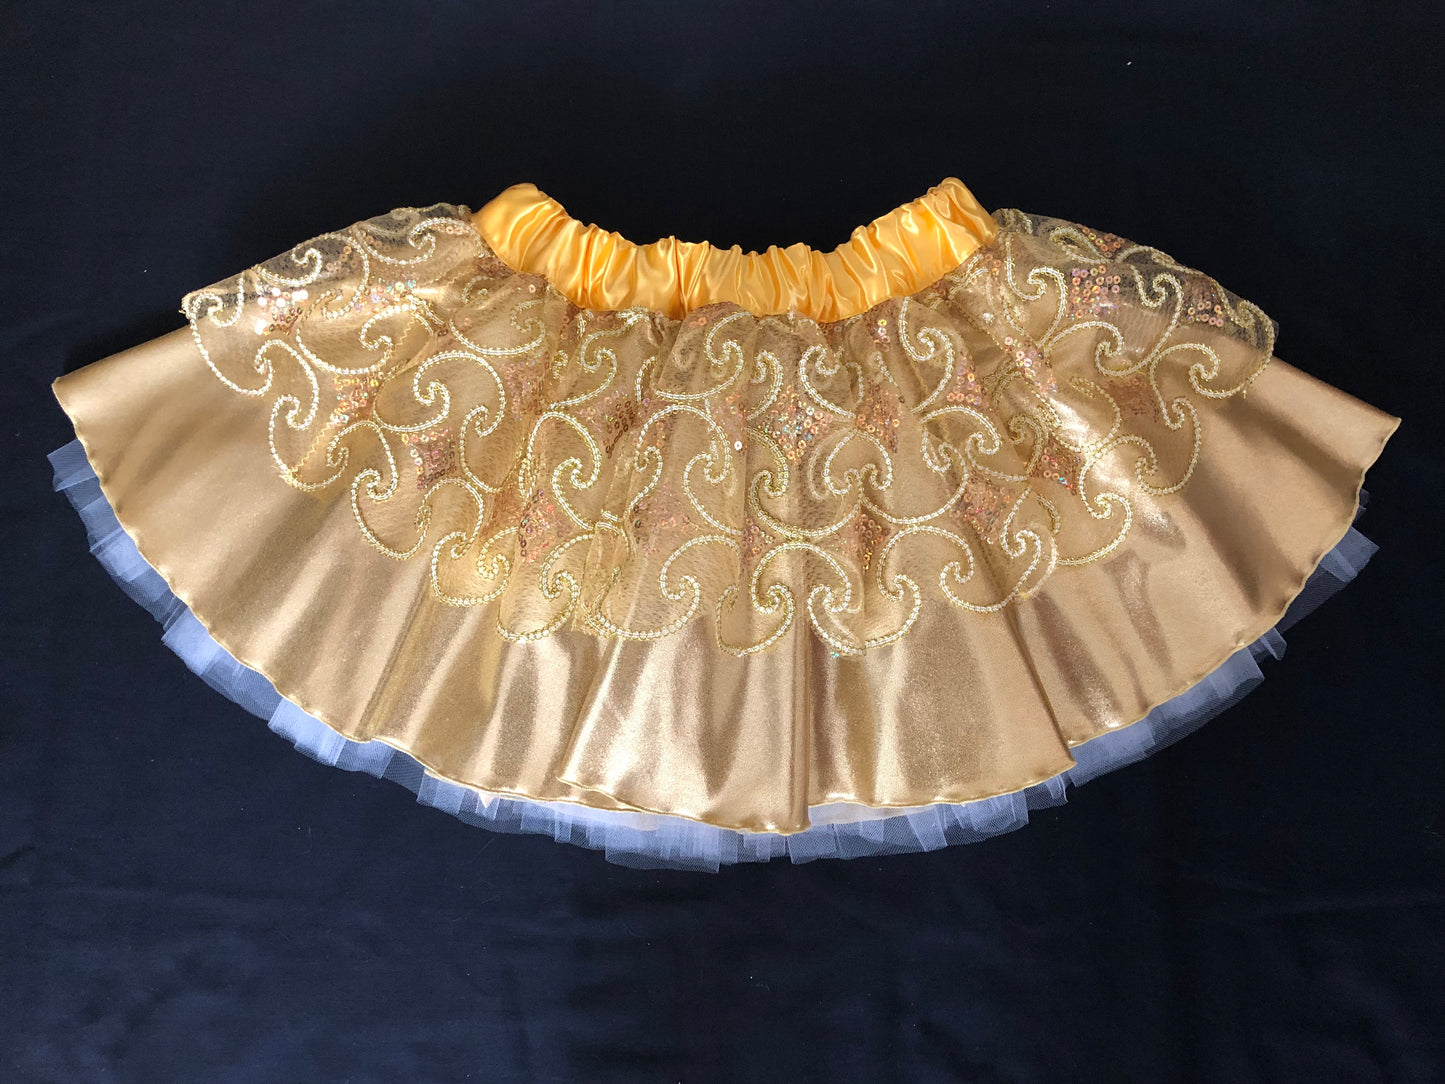 Razzle Dazzle Princess Premium Running Tutu Skirt